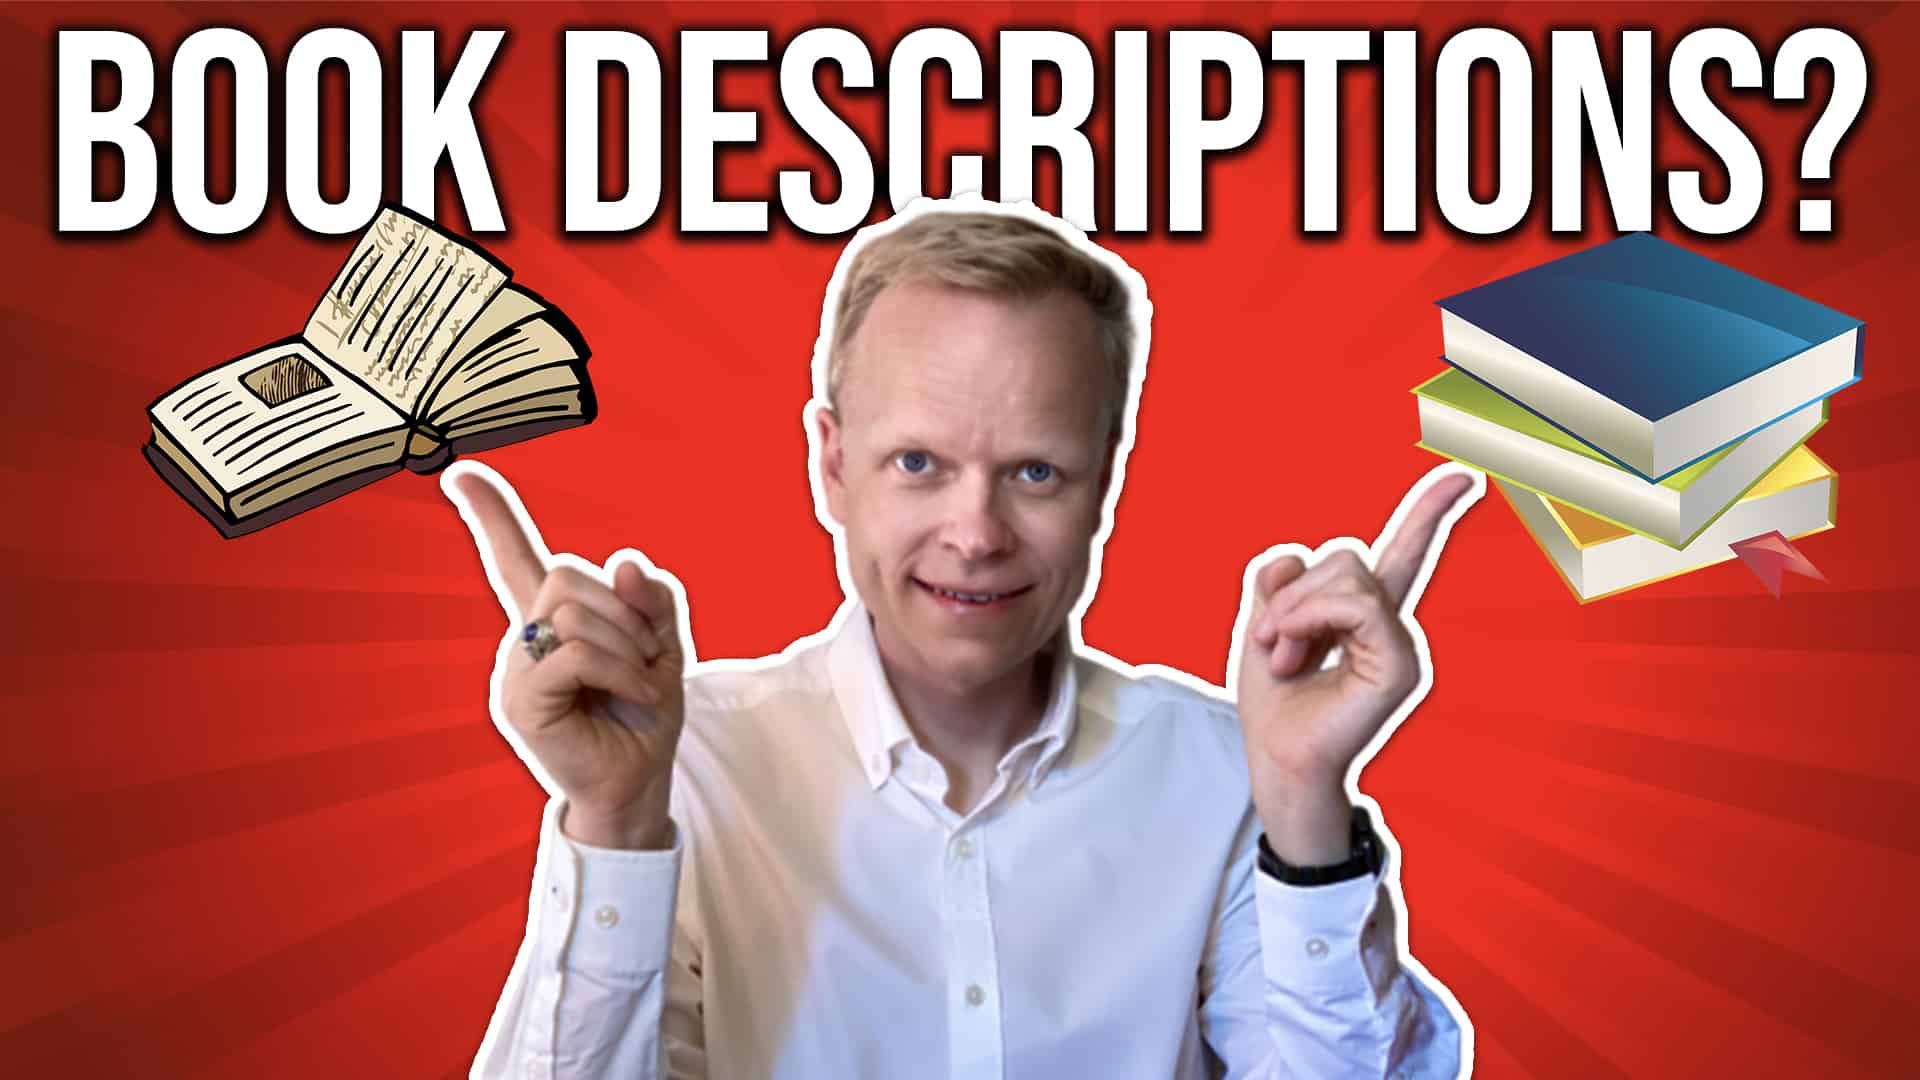 NonFiction Book Descriptions That Sell Books